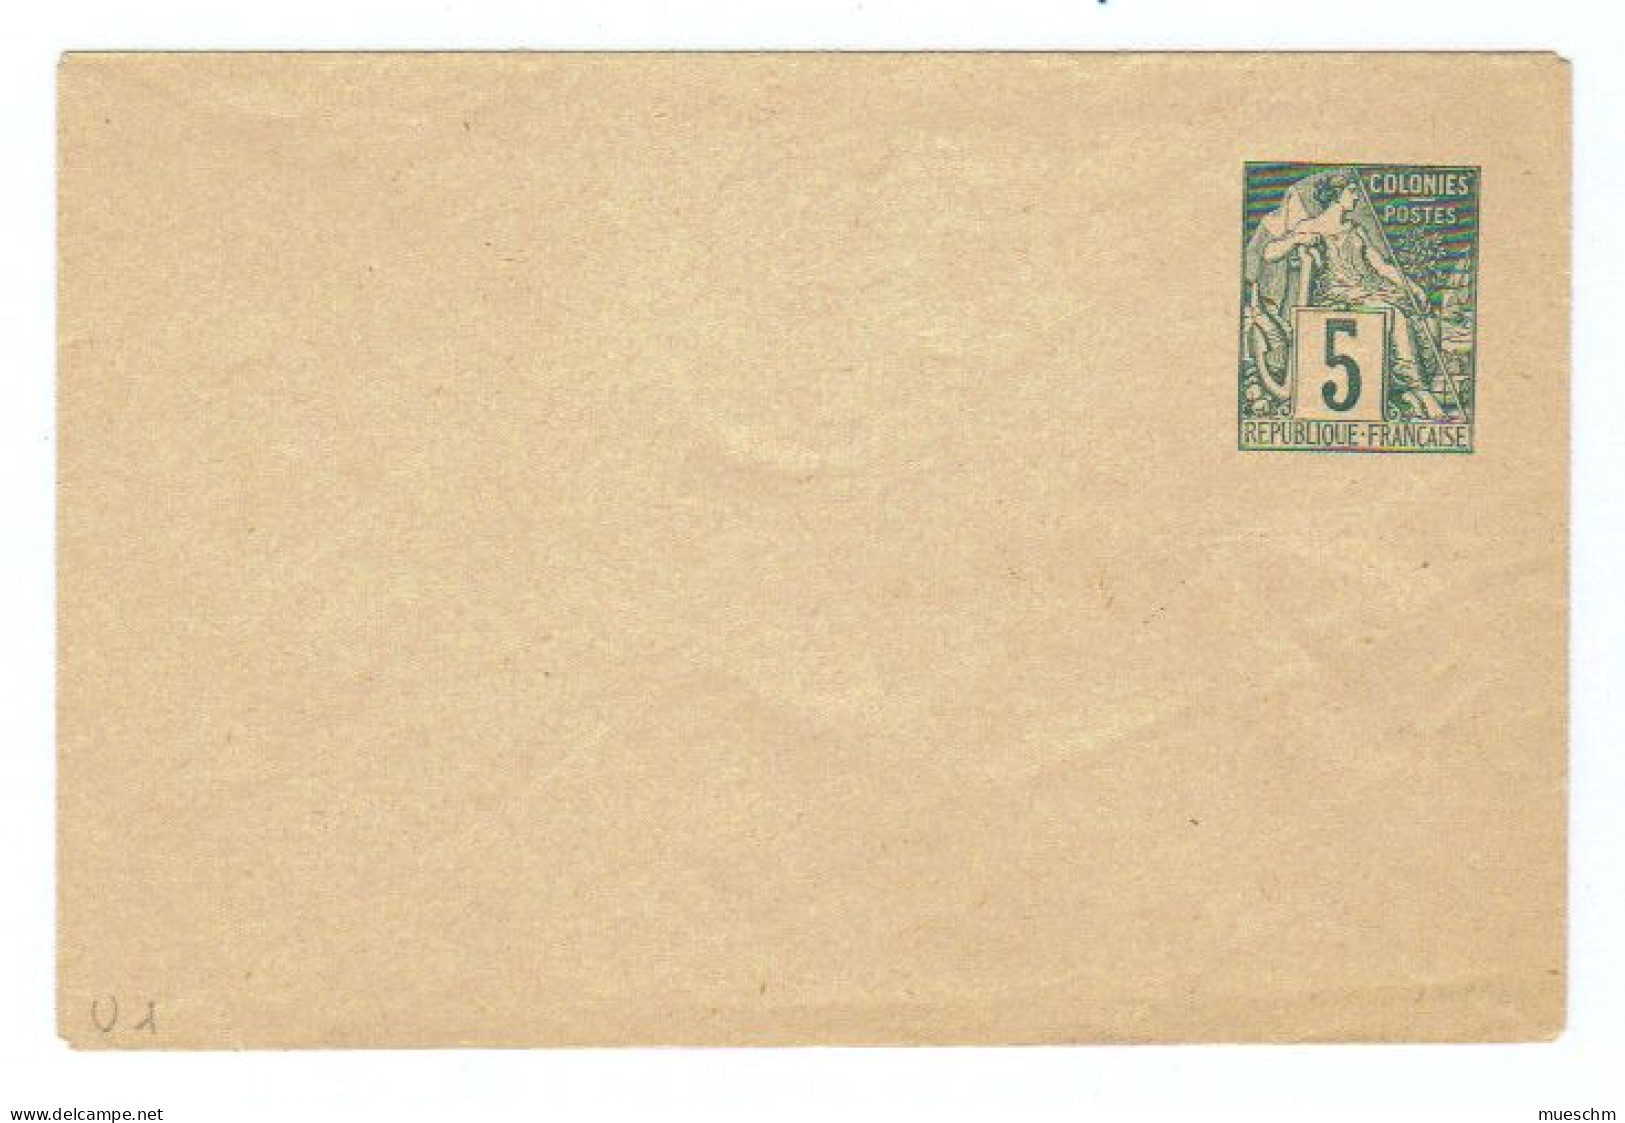 Frankreich/Kolonien, Ca.1900,  Ungebrauchtes Briefkuvert Mit Eingedr. Frankatur "Colonies Postes" (10155W) - Other & Unclassified